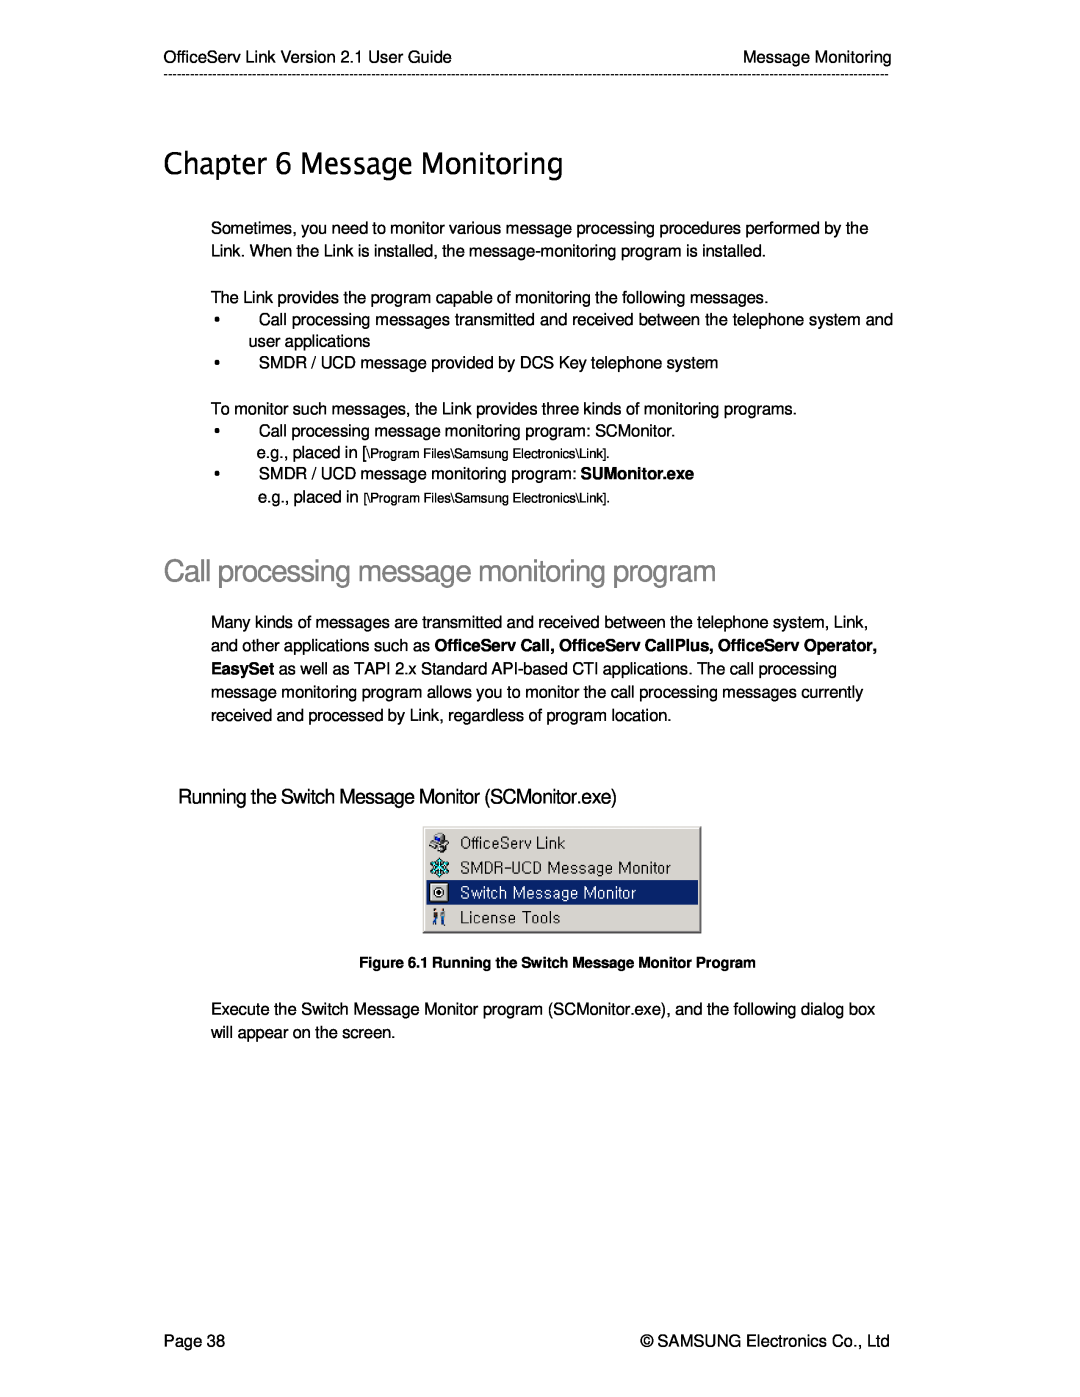 Samsung Version 2.1 manual Message Monitoring, Call processing message monitoring program 